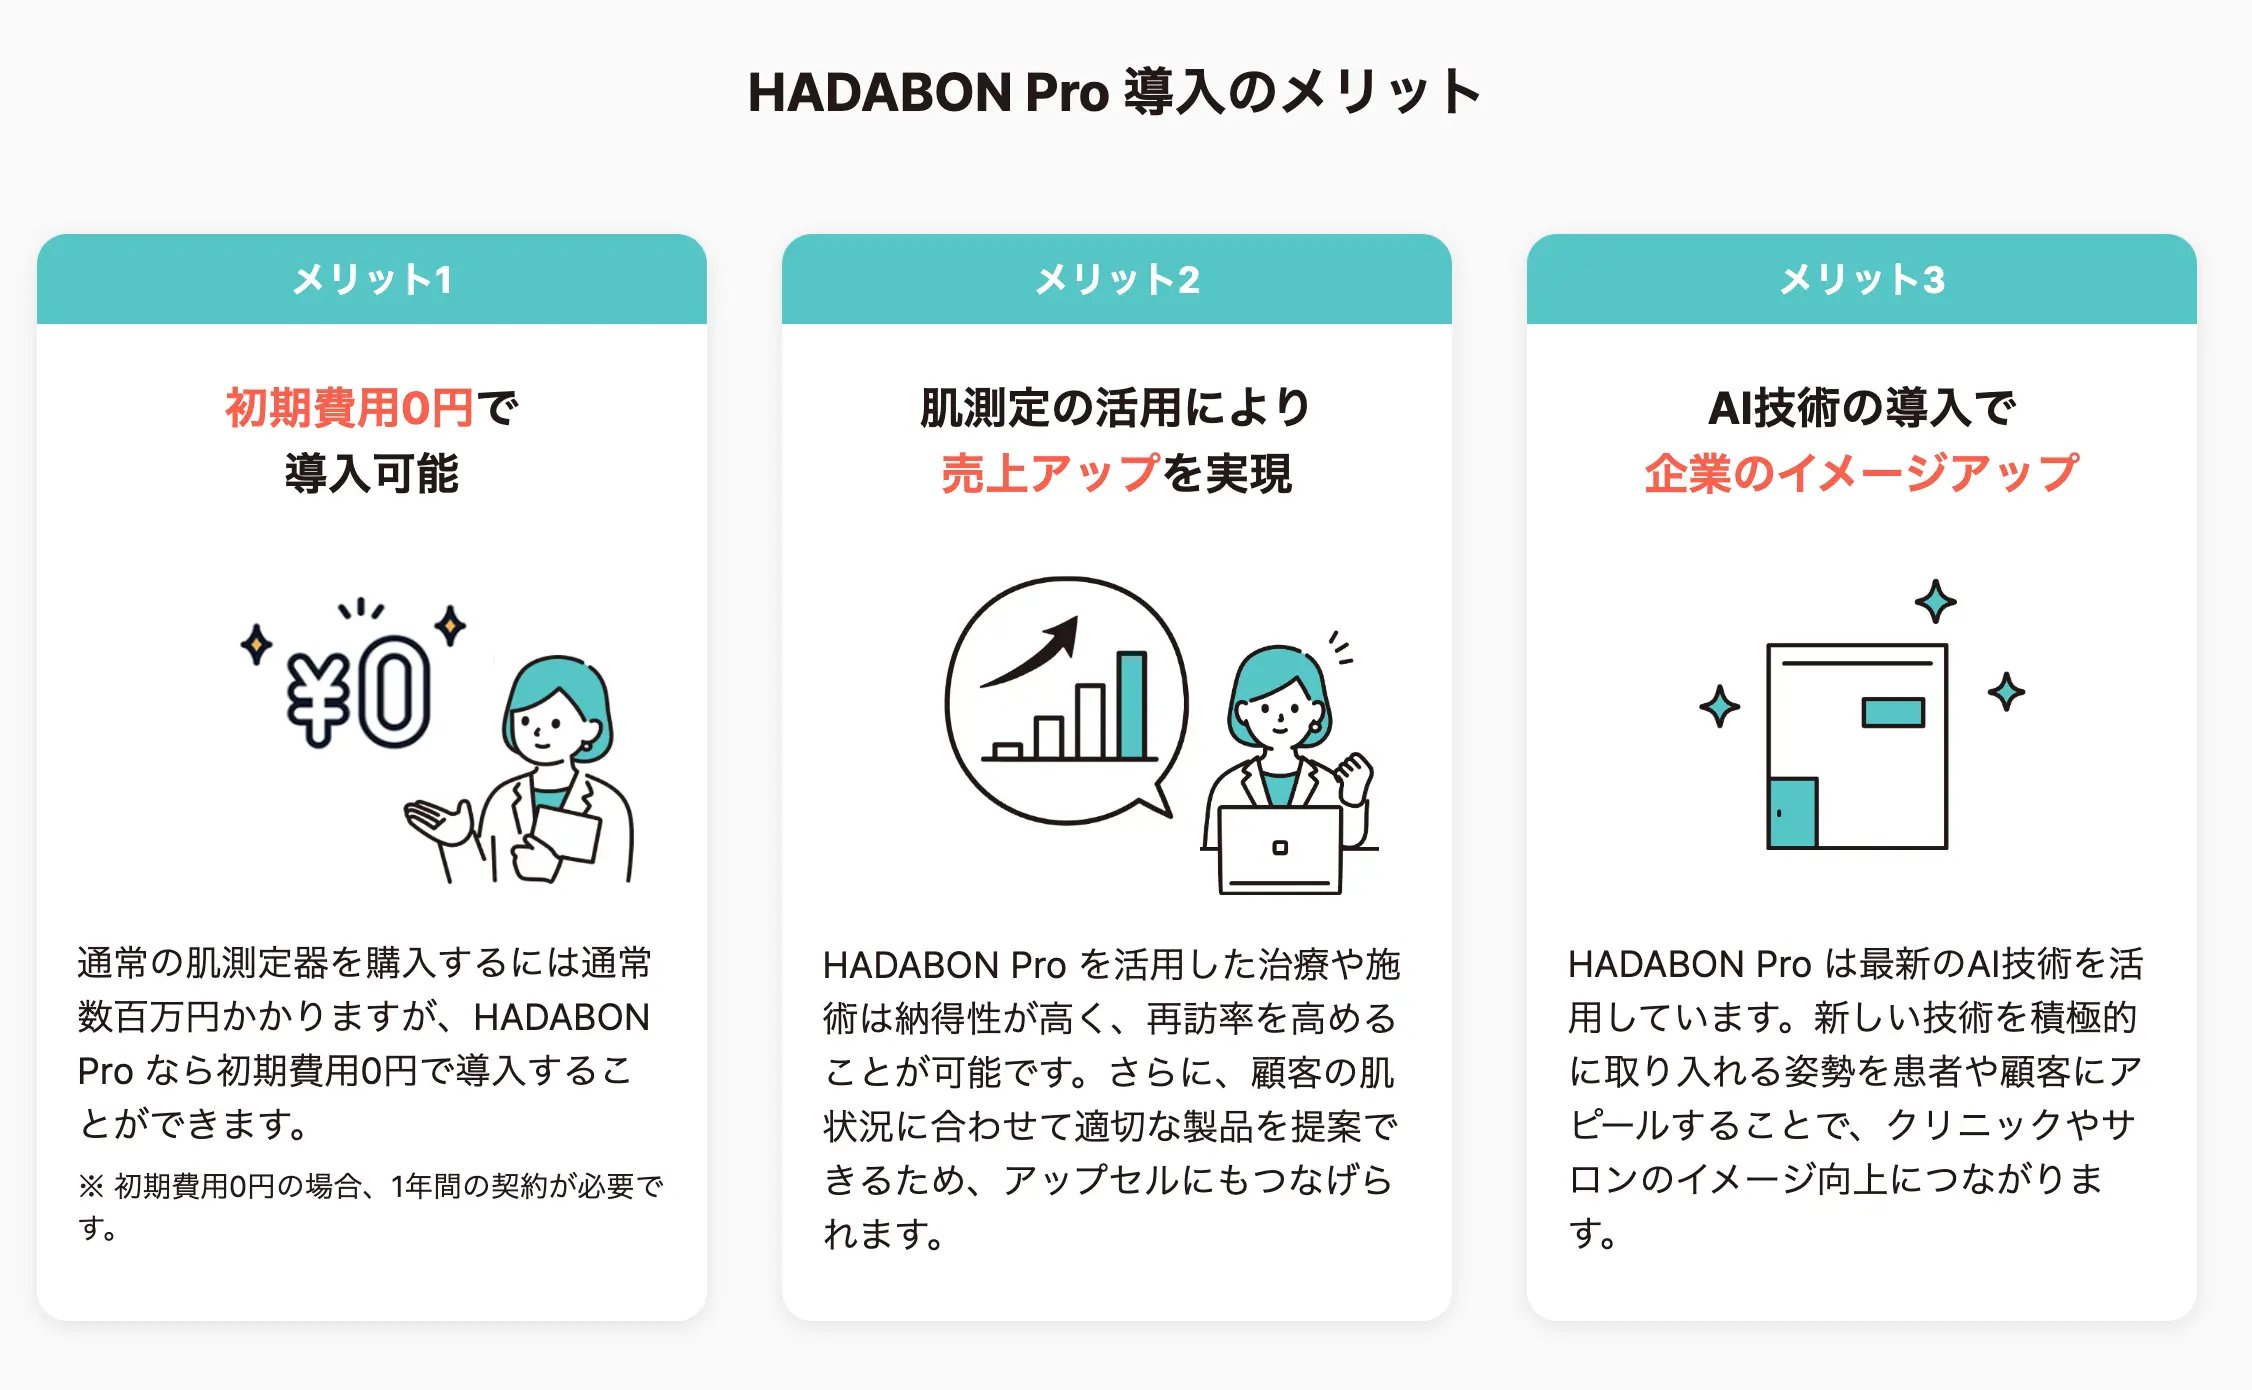 HADABON Pro導入のメリット